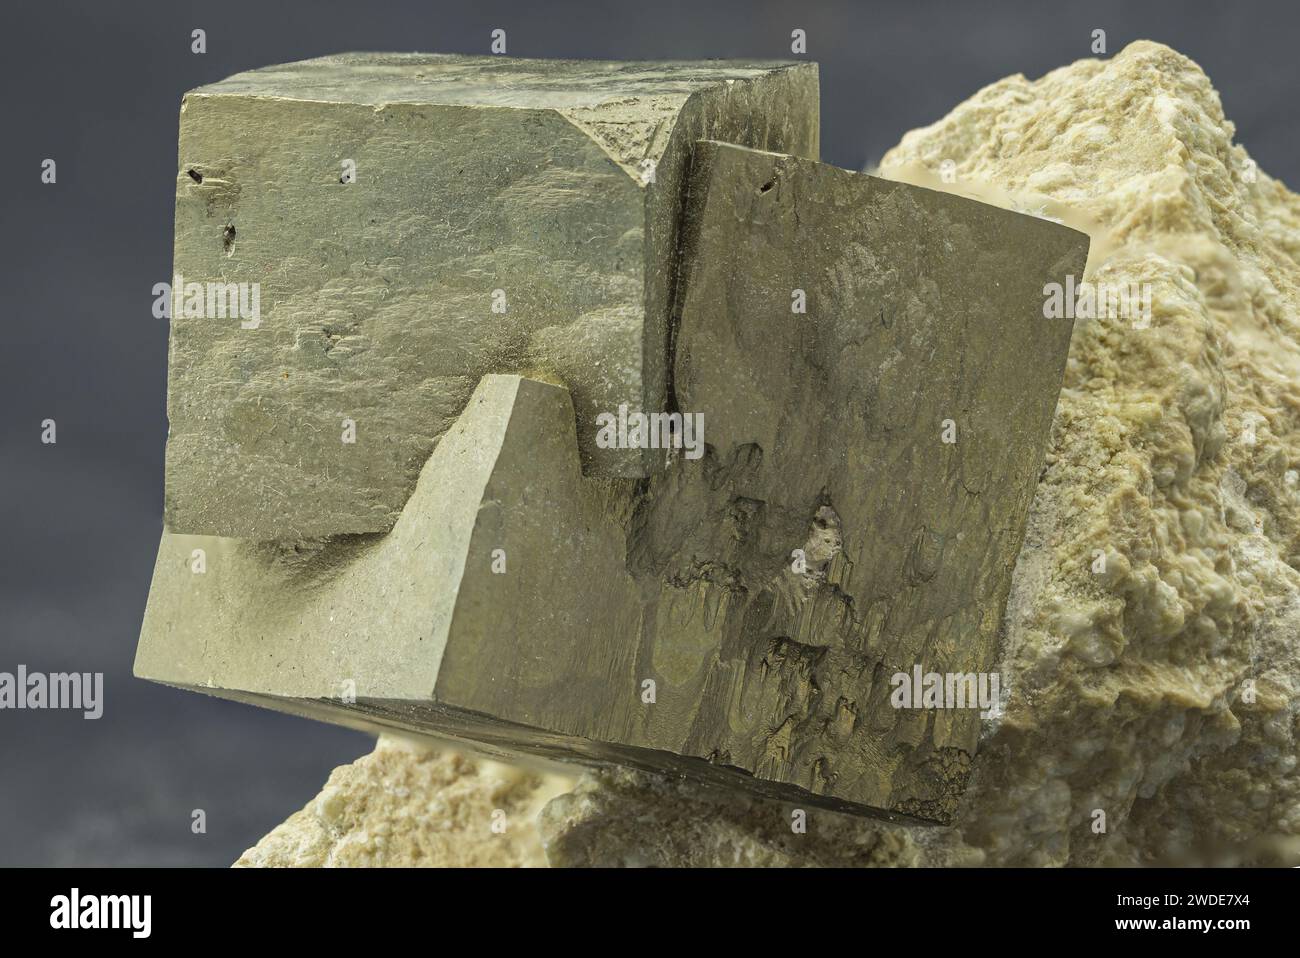 Cristaux de pyrite étincelants incorporés dans la matrice géologique Banque D'Images